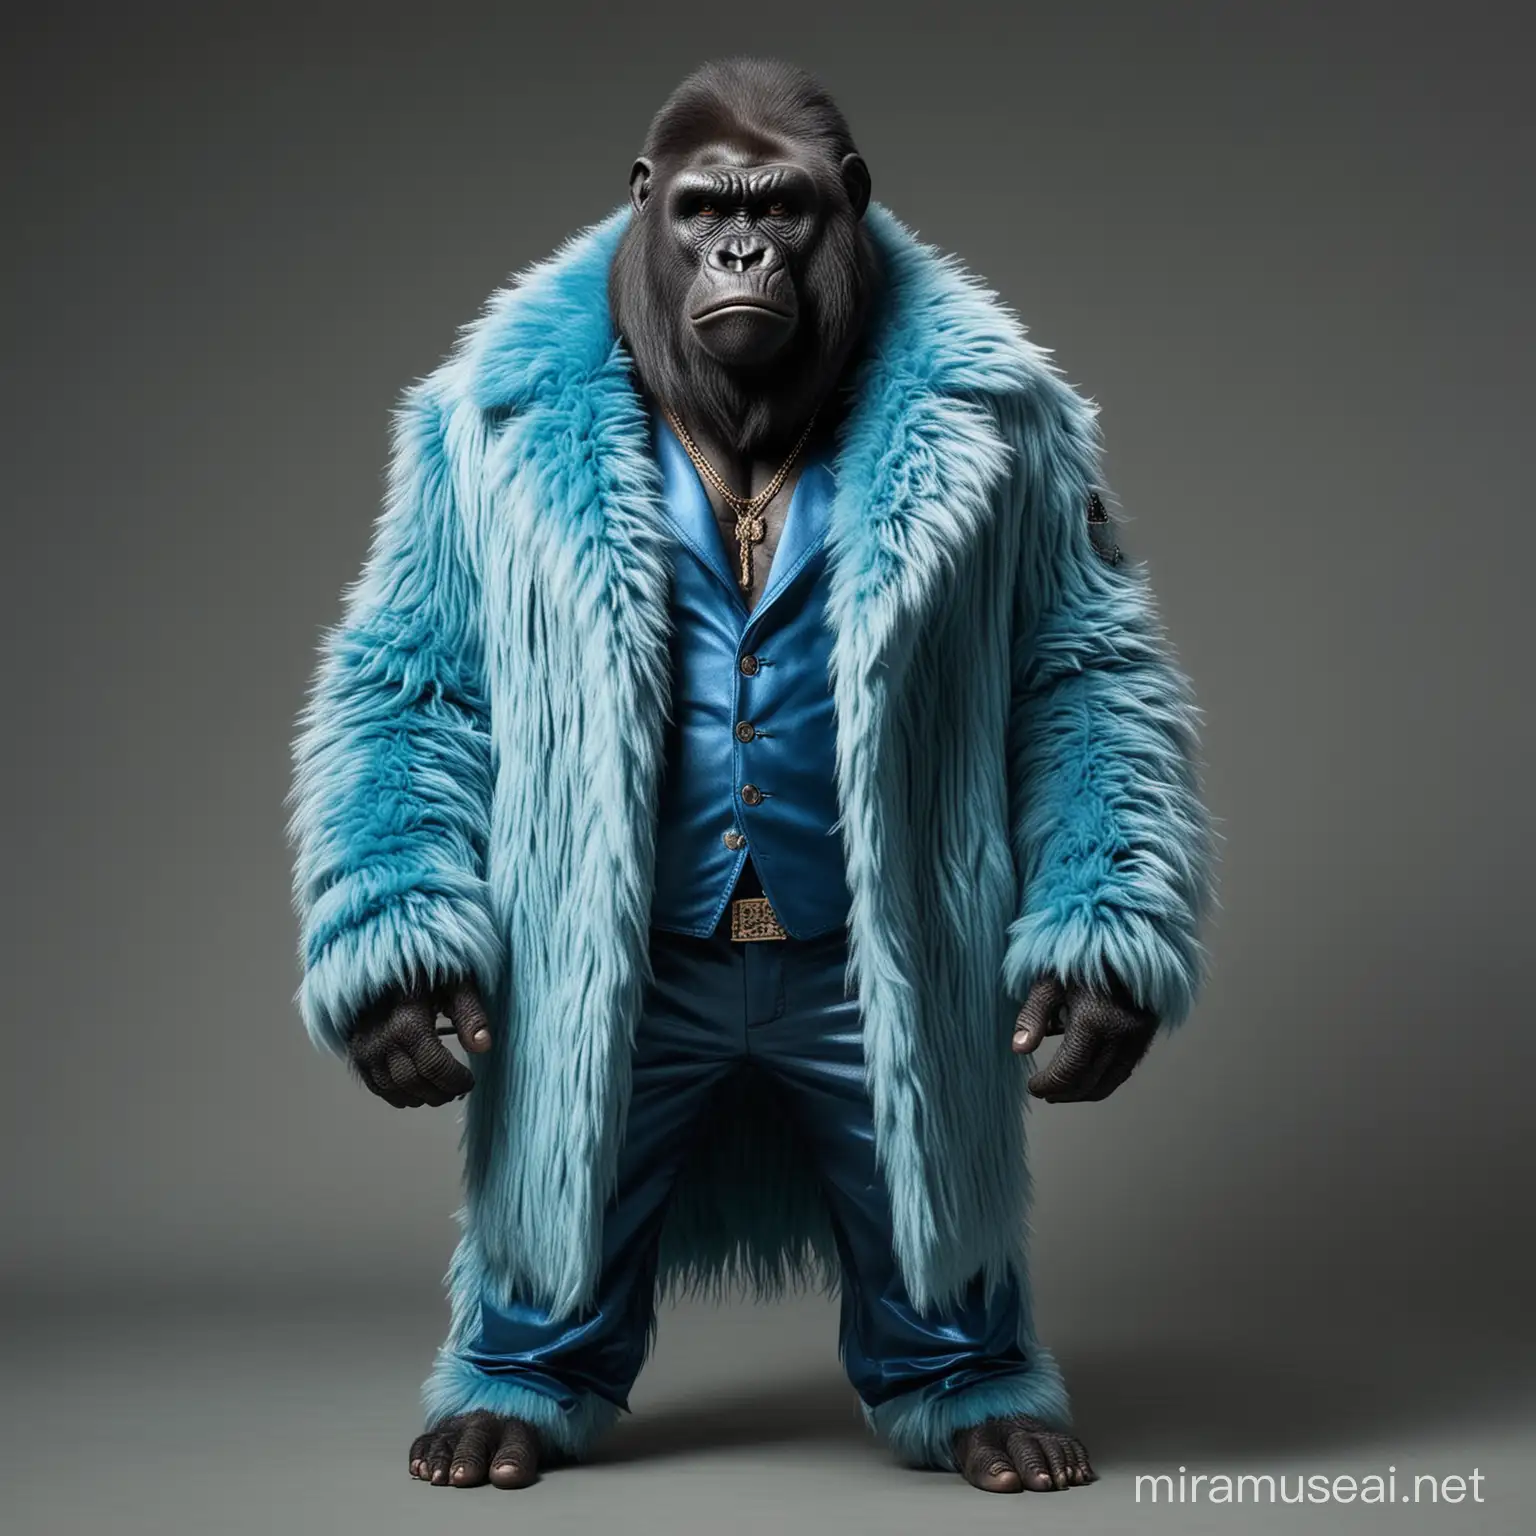 Gorilla in Blue Fur Coat with Mafia Pimp Style